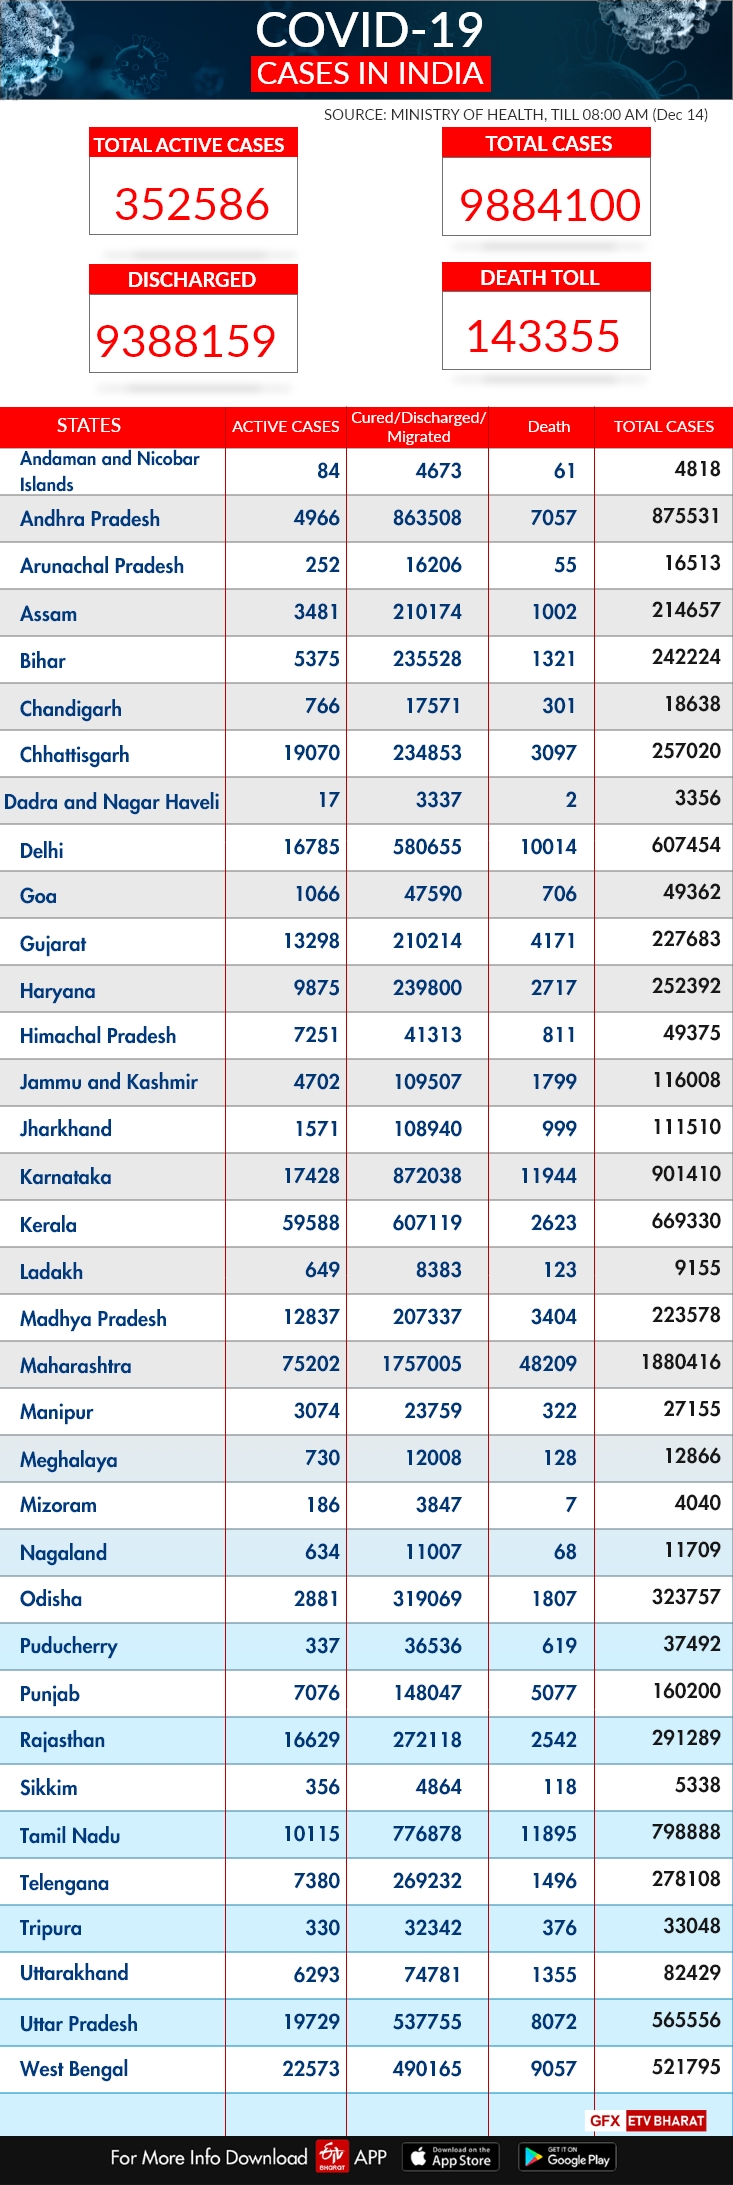 ઇન્ડિયા કોરોના અપડેટ: ભારતમાં કોરોના સંક્રમણનો આંકડો 98,84,100 પર